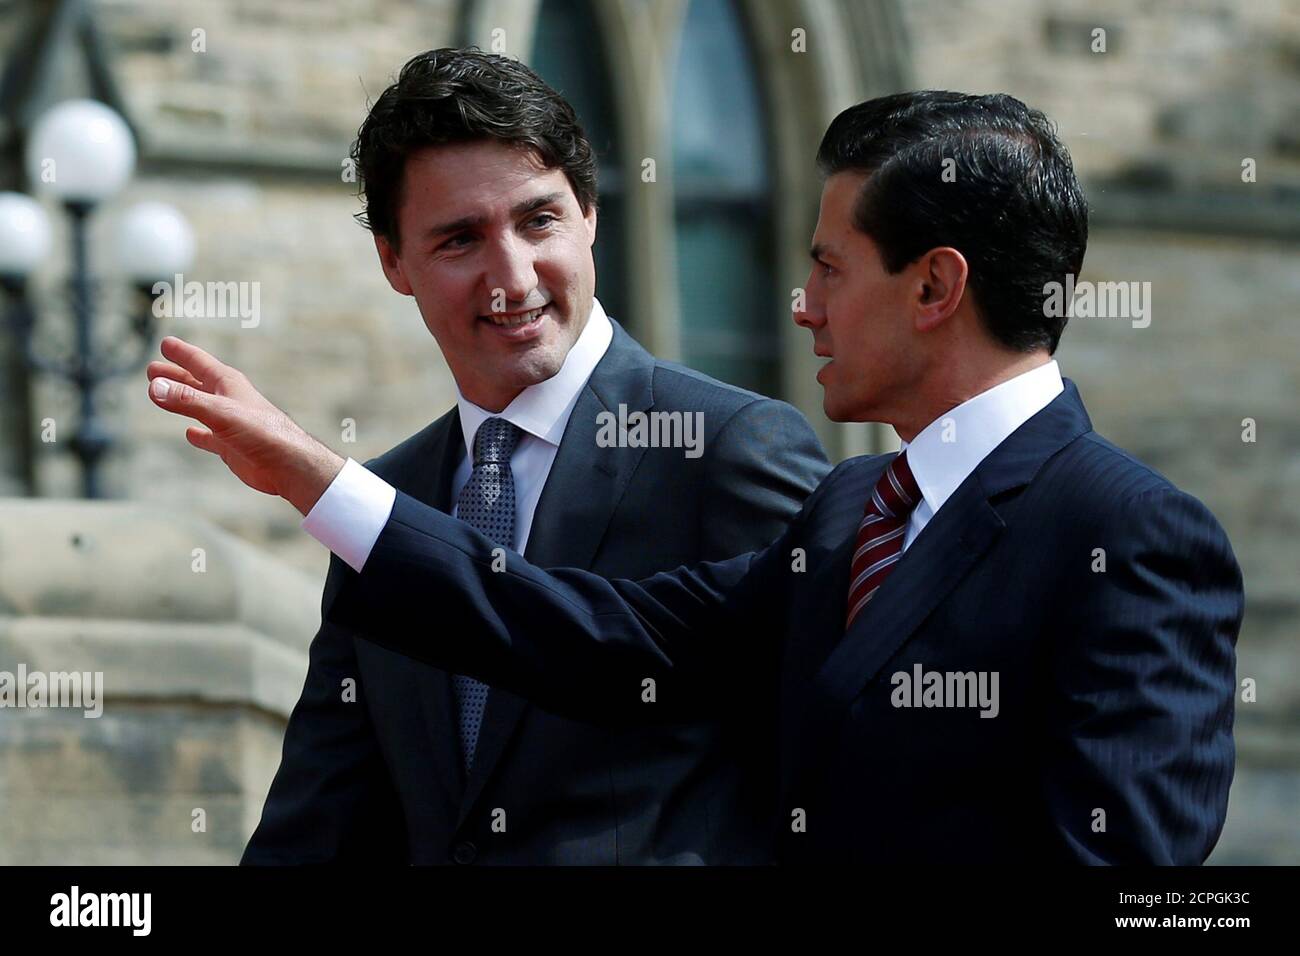 Il primo ministro canadese Justin Trudeau (L) cammina con il presidente del Messico Enrique pena Nieto sulla collina del Parlamento a Ottawa, Ontario, Canada, 28 giugno 2016. REUTERS/Chris Wattie Foto Stock